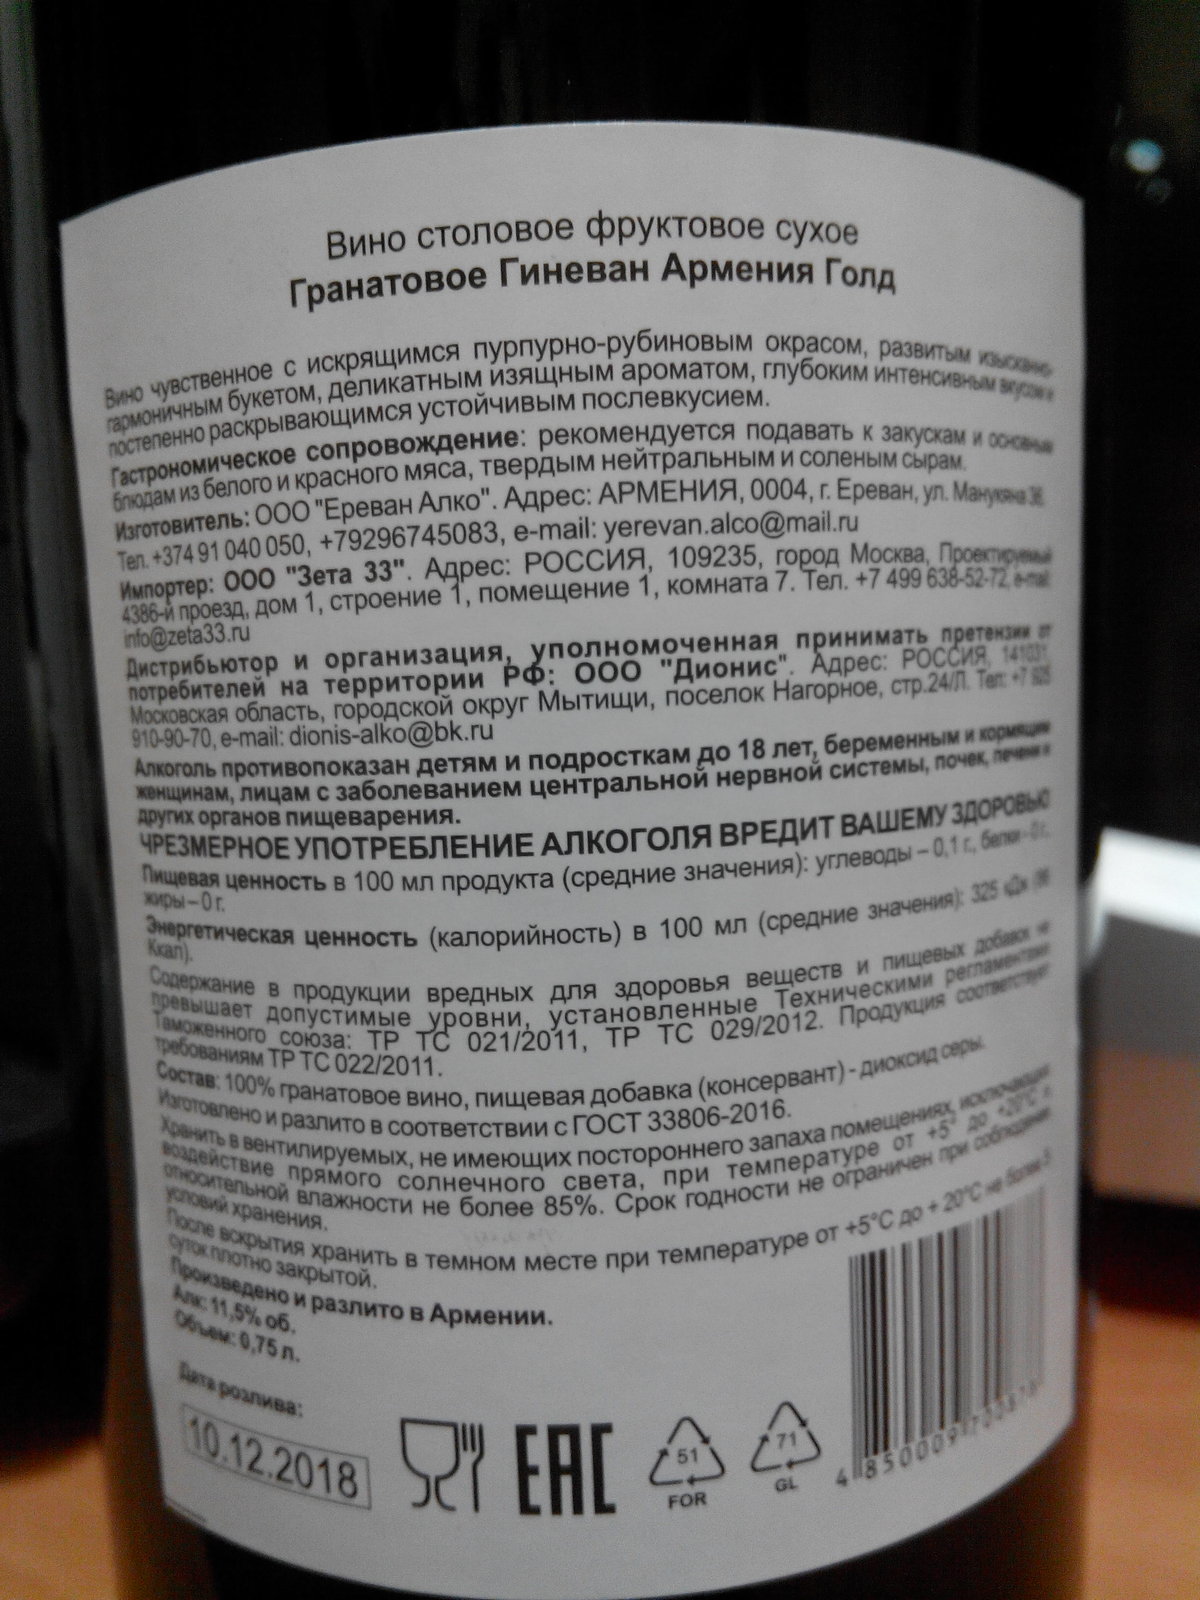 Гранатовое вино сухое Гиневан Армения